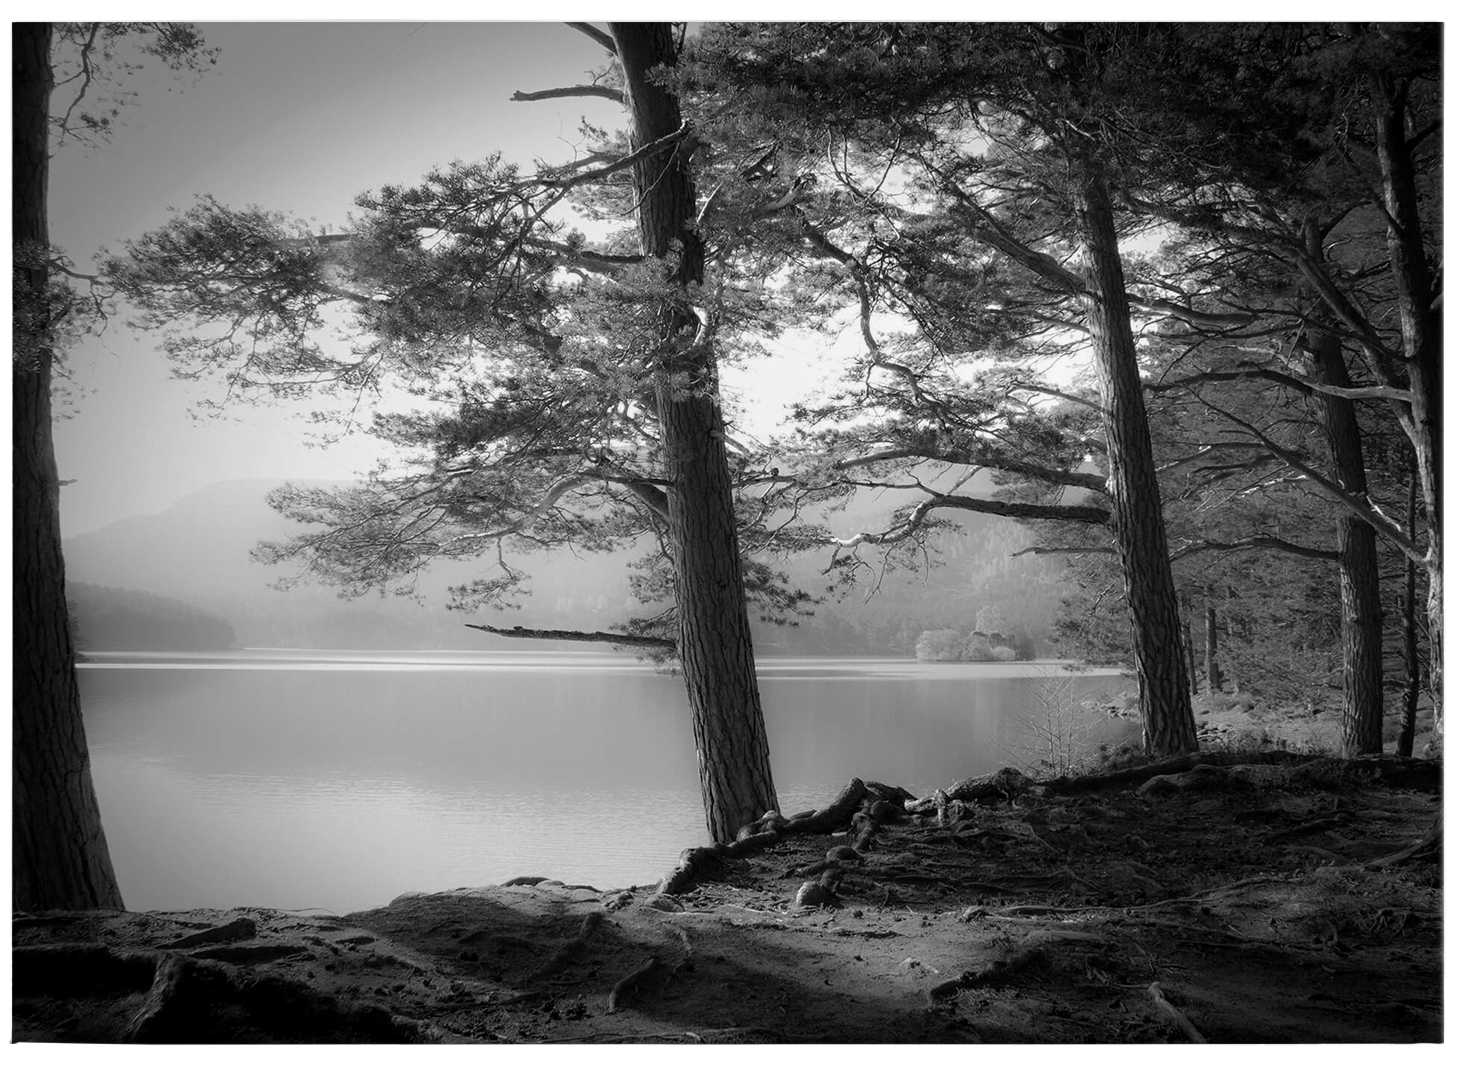             Cuadro lienzo en blanco y negro Bosque y lago by Fuhg - 0,70 m x 0,50 m
        